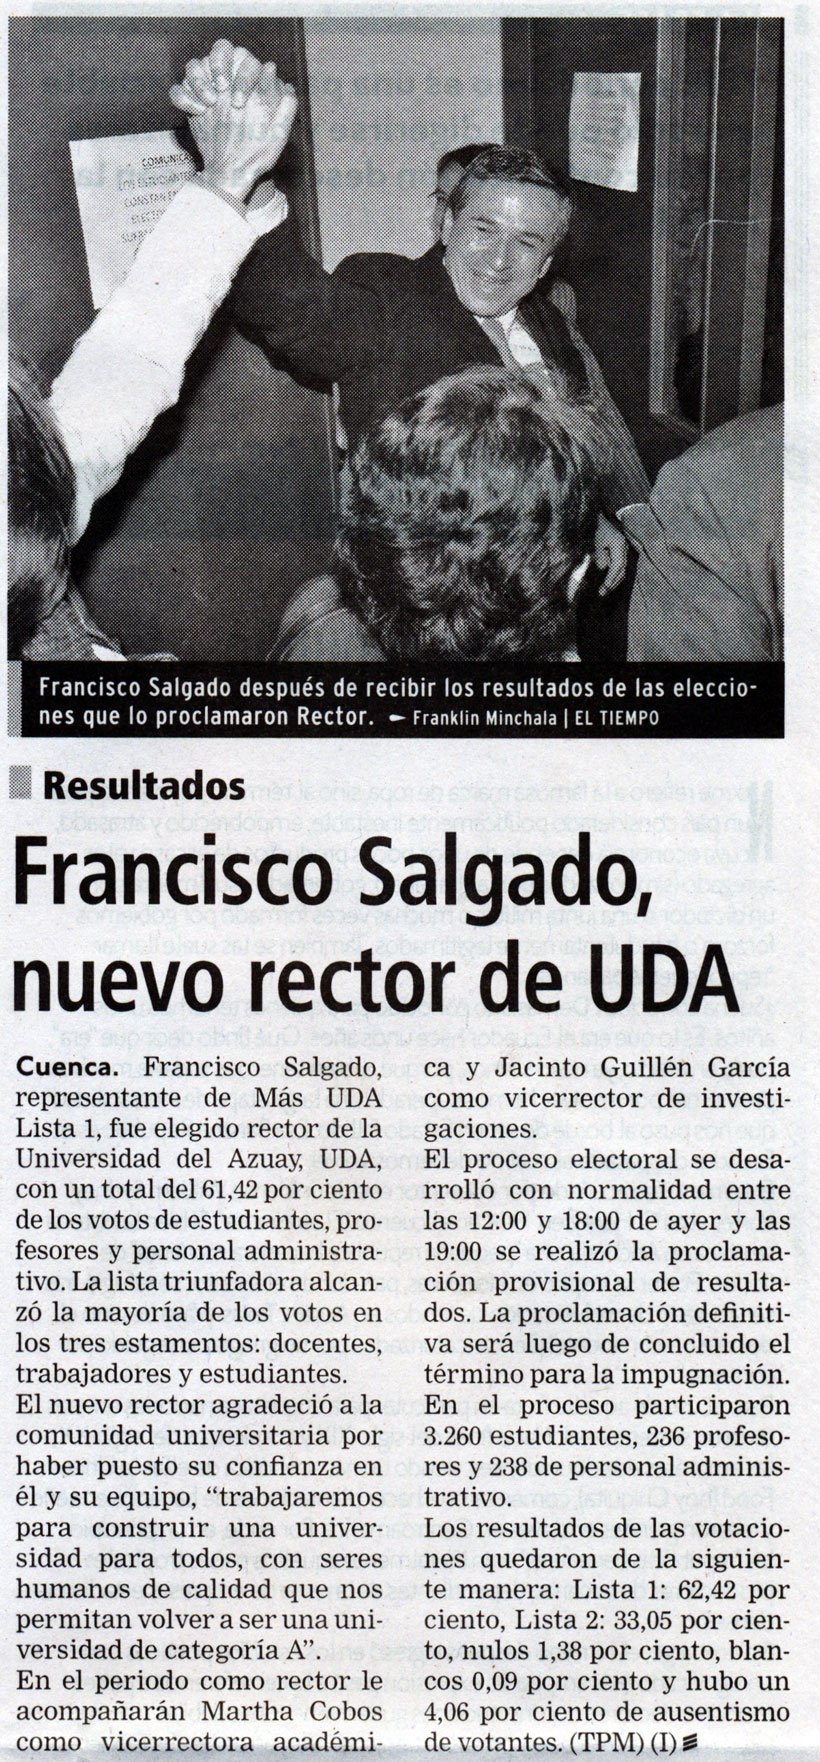 Francisco Salgado, new rector of UDA